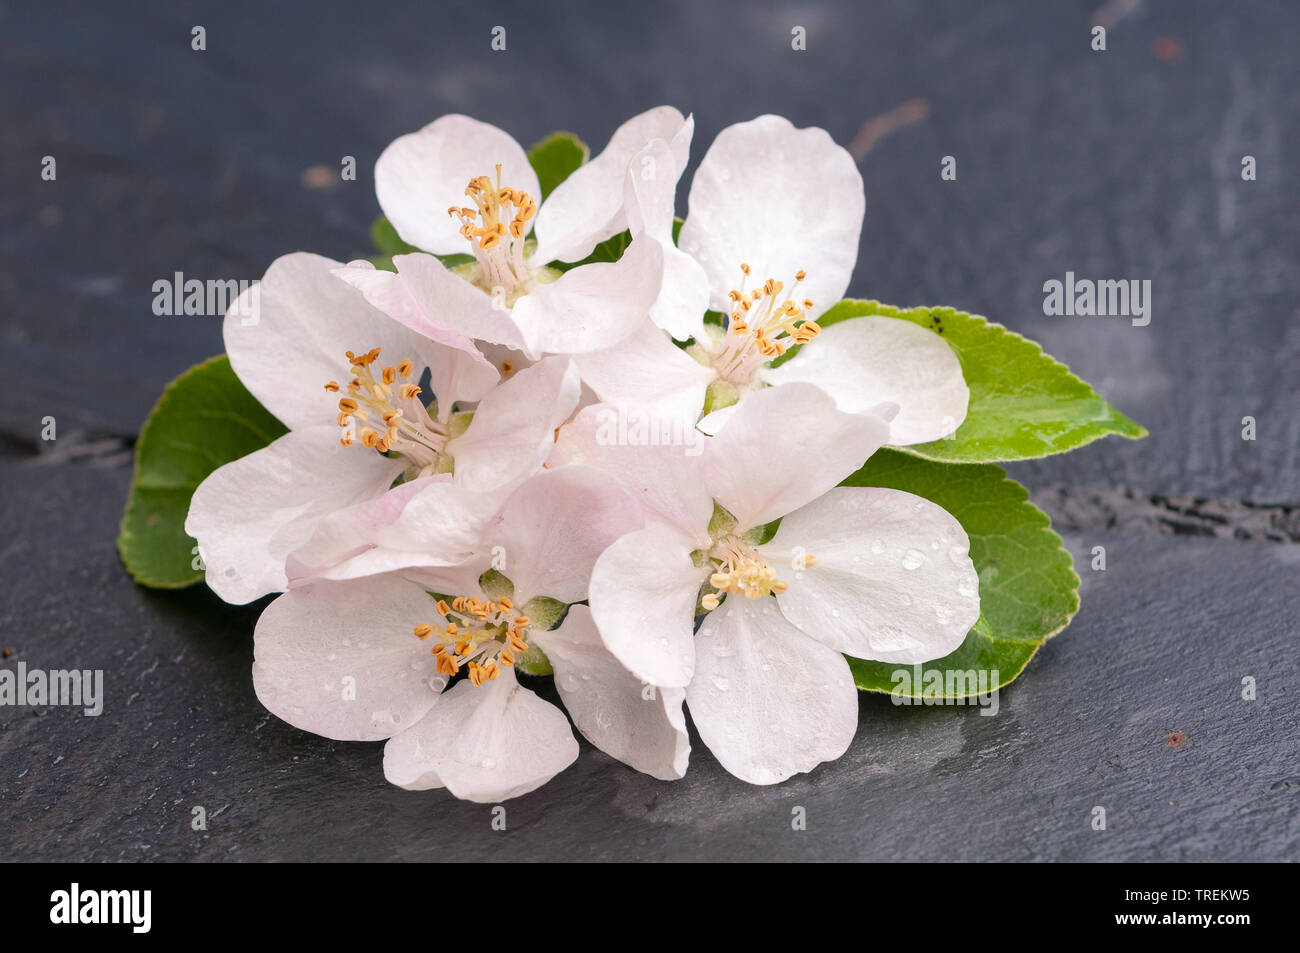 Pommier (Malus domestica), fleurs d'Apple sur une table, Allemagne Banque D'Images